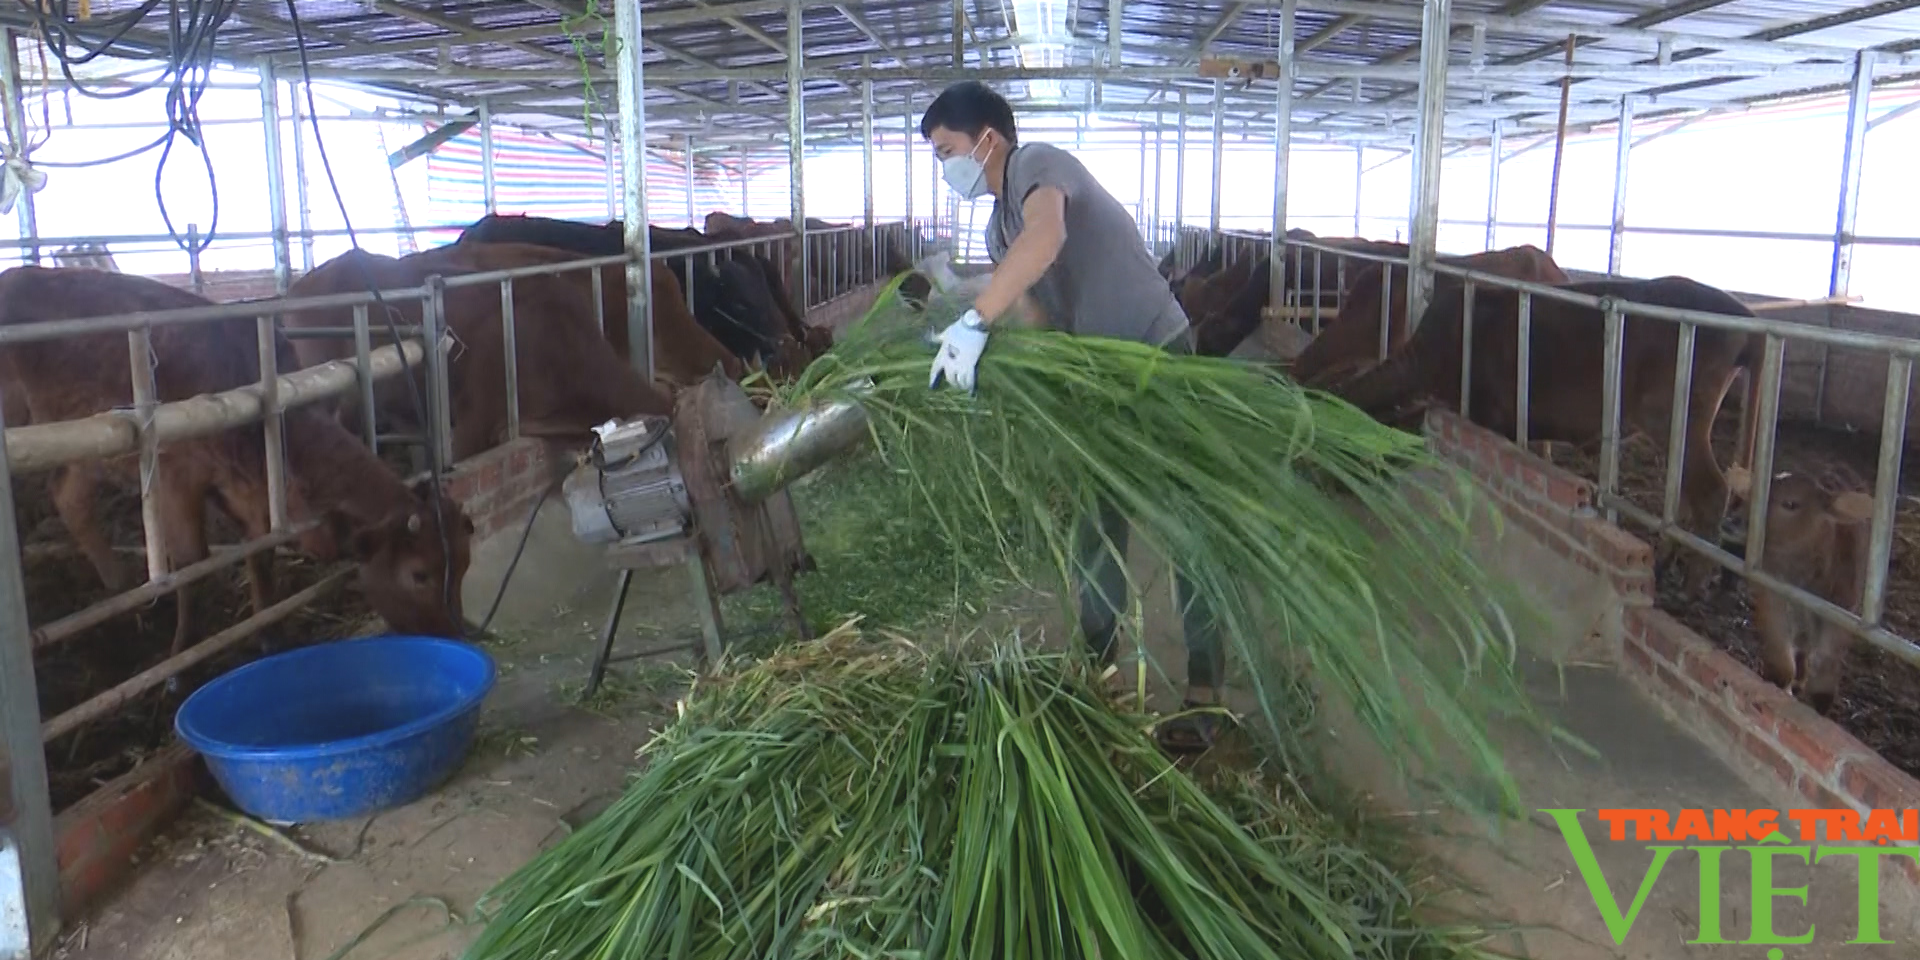 Huyện biên giới Sơn La phát triển chăn nuôi theo hướng sản xuất hàng hoá - Ảnh 6.